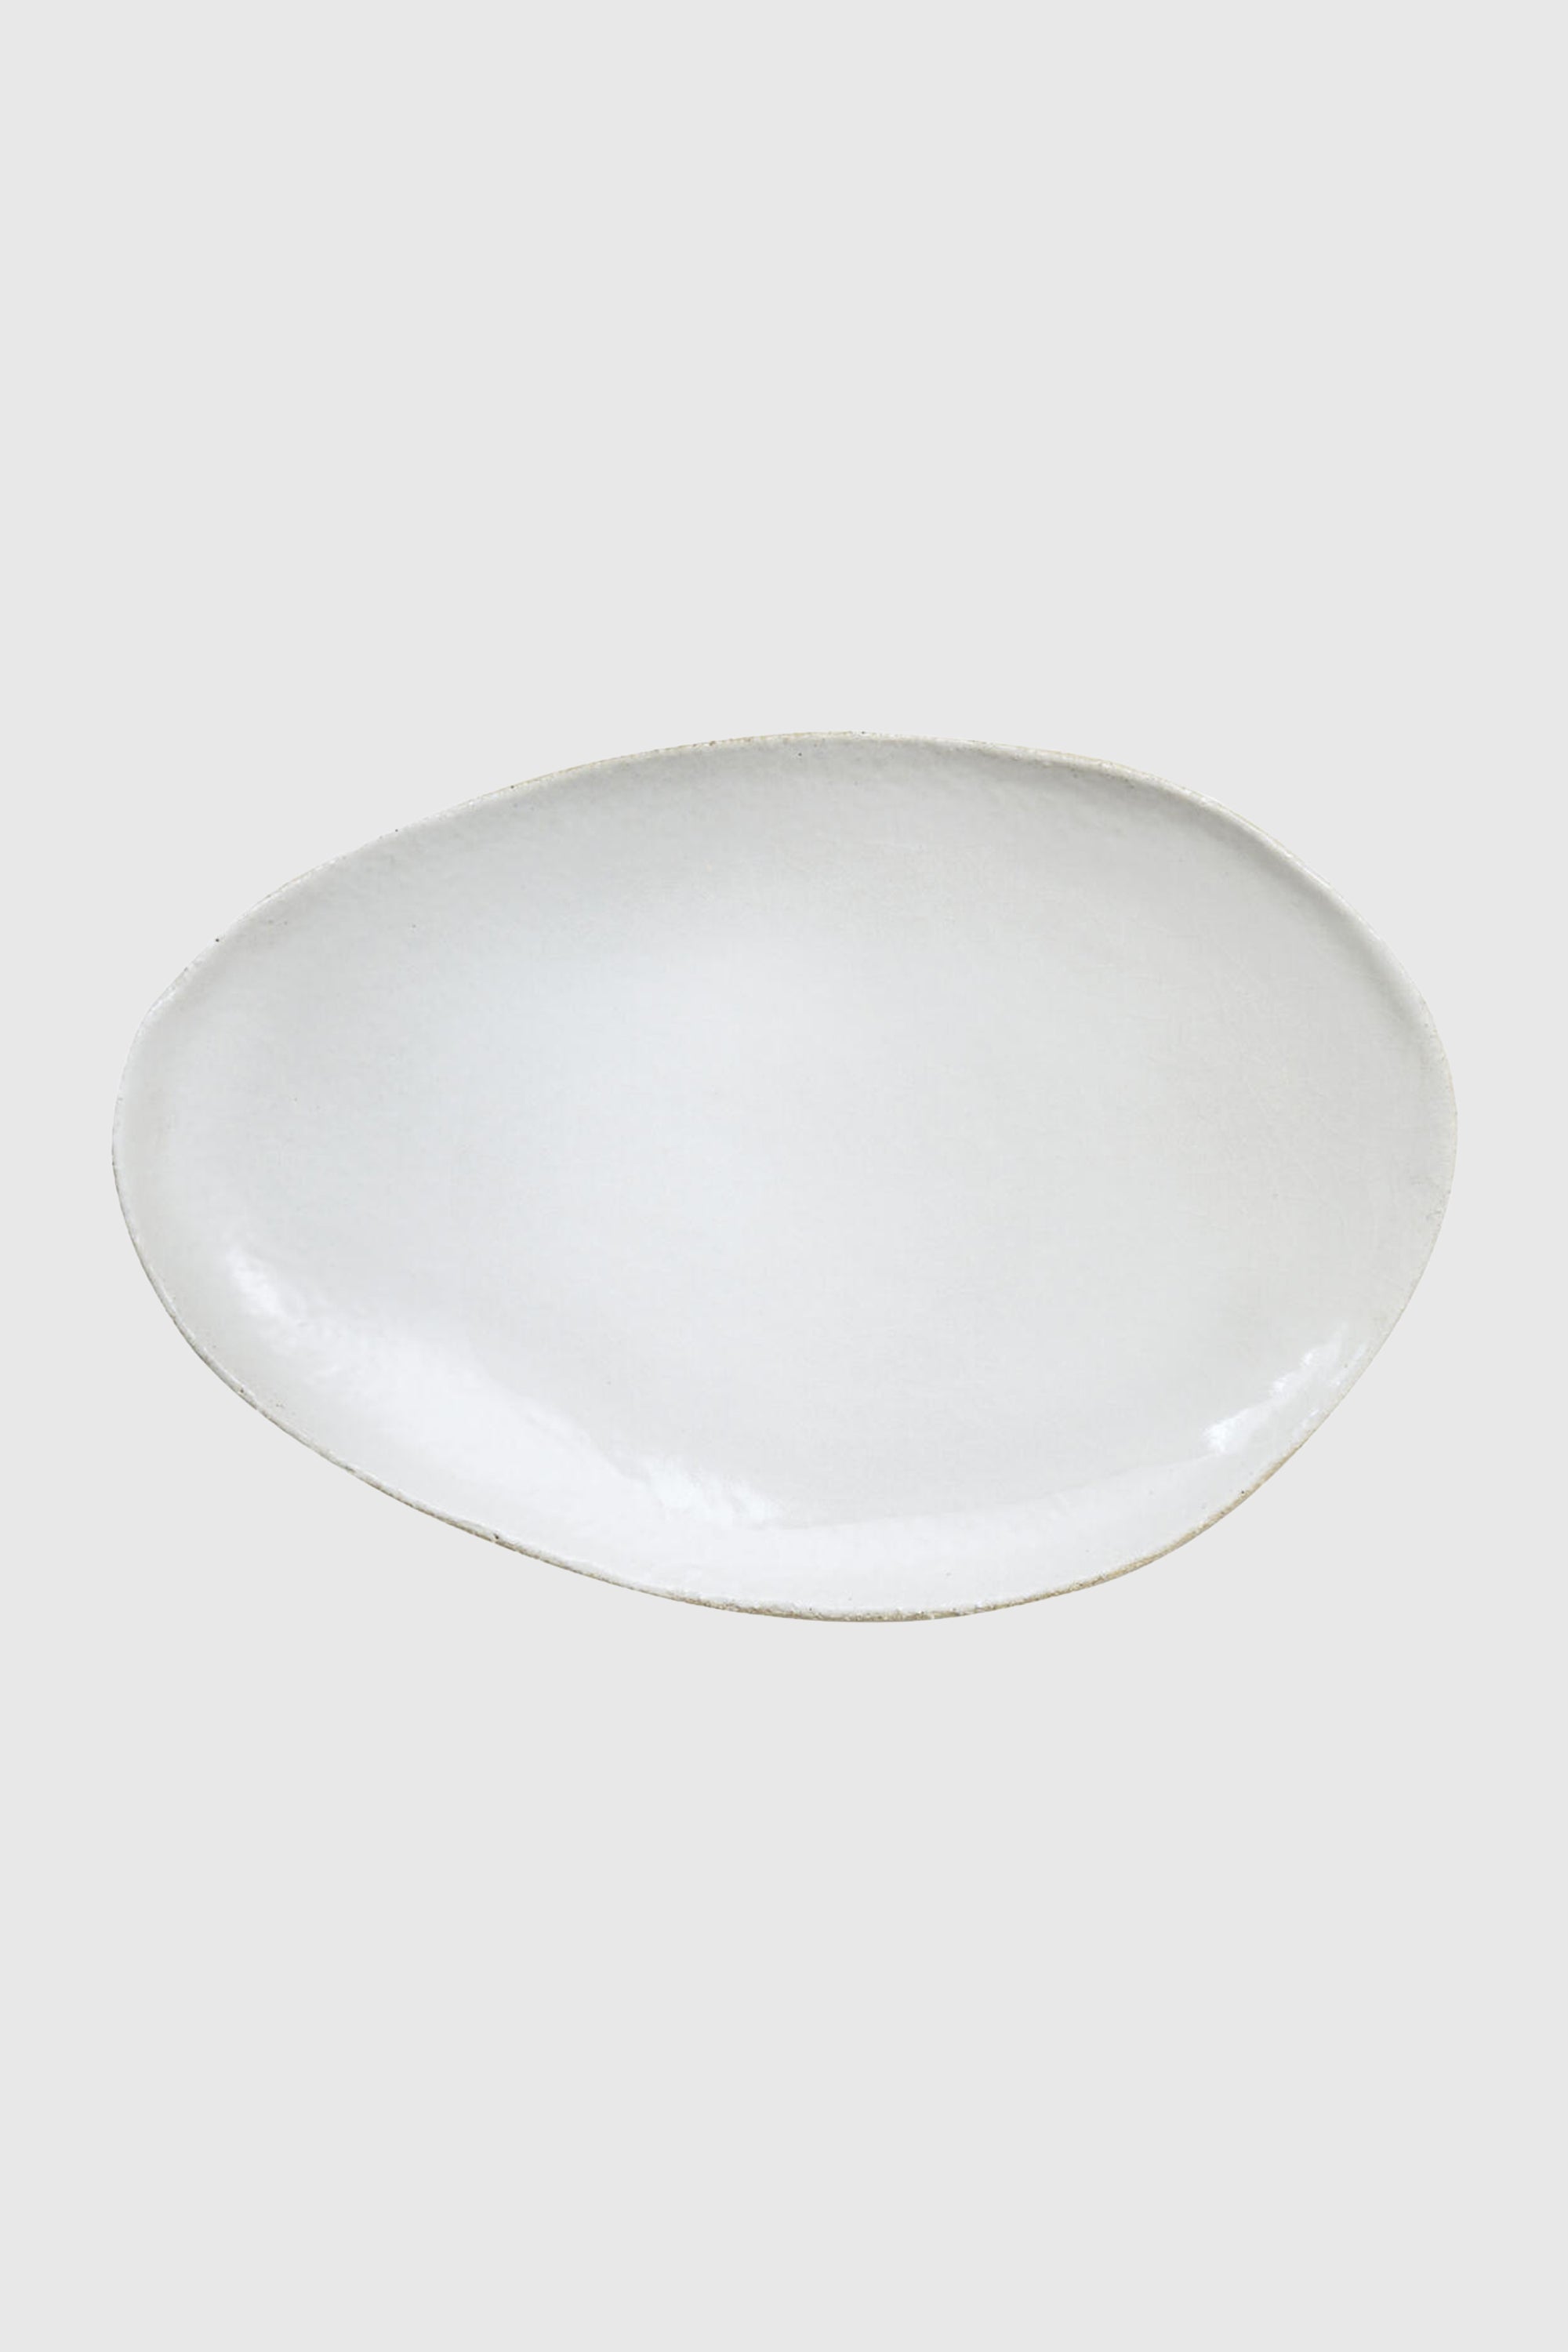 Wabi Oval Serving Dish in Blanc